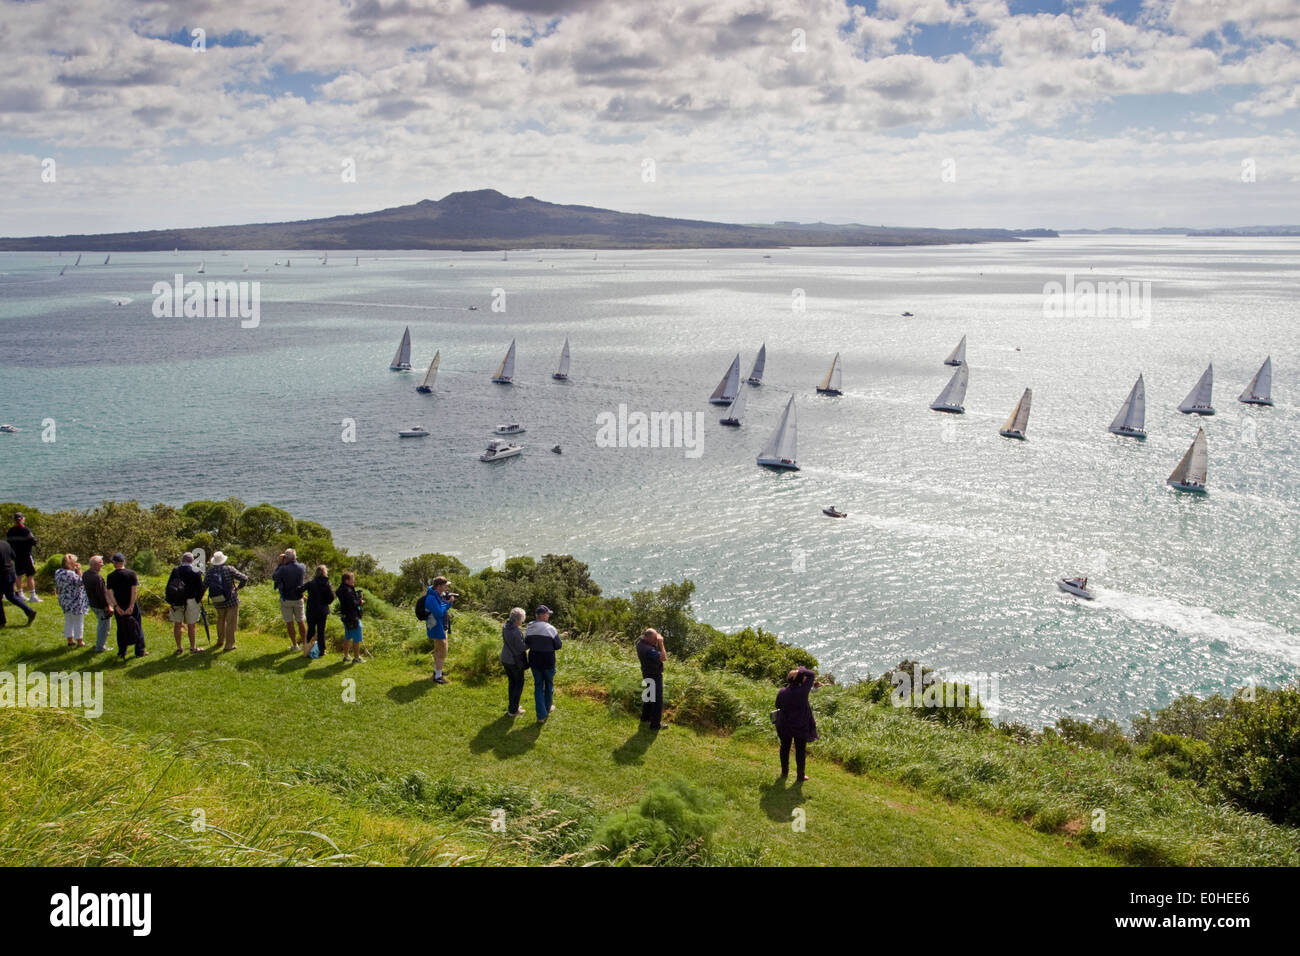 La carrera anual clásico yate costero sale por la Bahía de las Islas Auckland, Nueva Zelandia, el viernes, 25 de octubre de 2013. Foto de stock